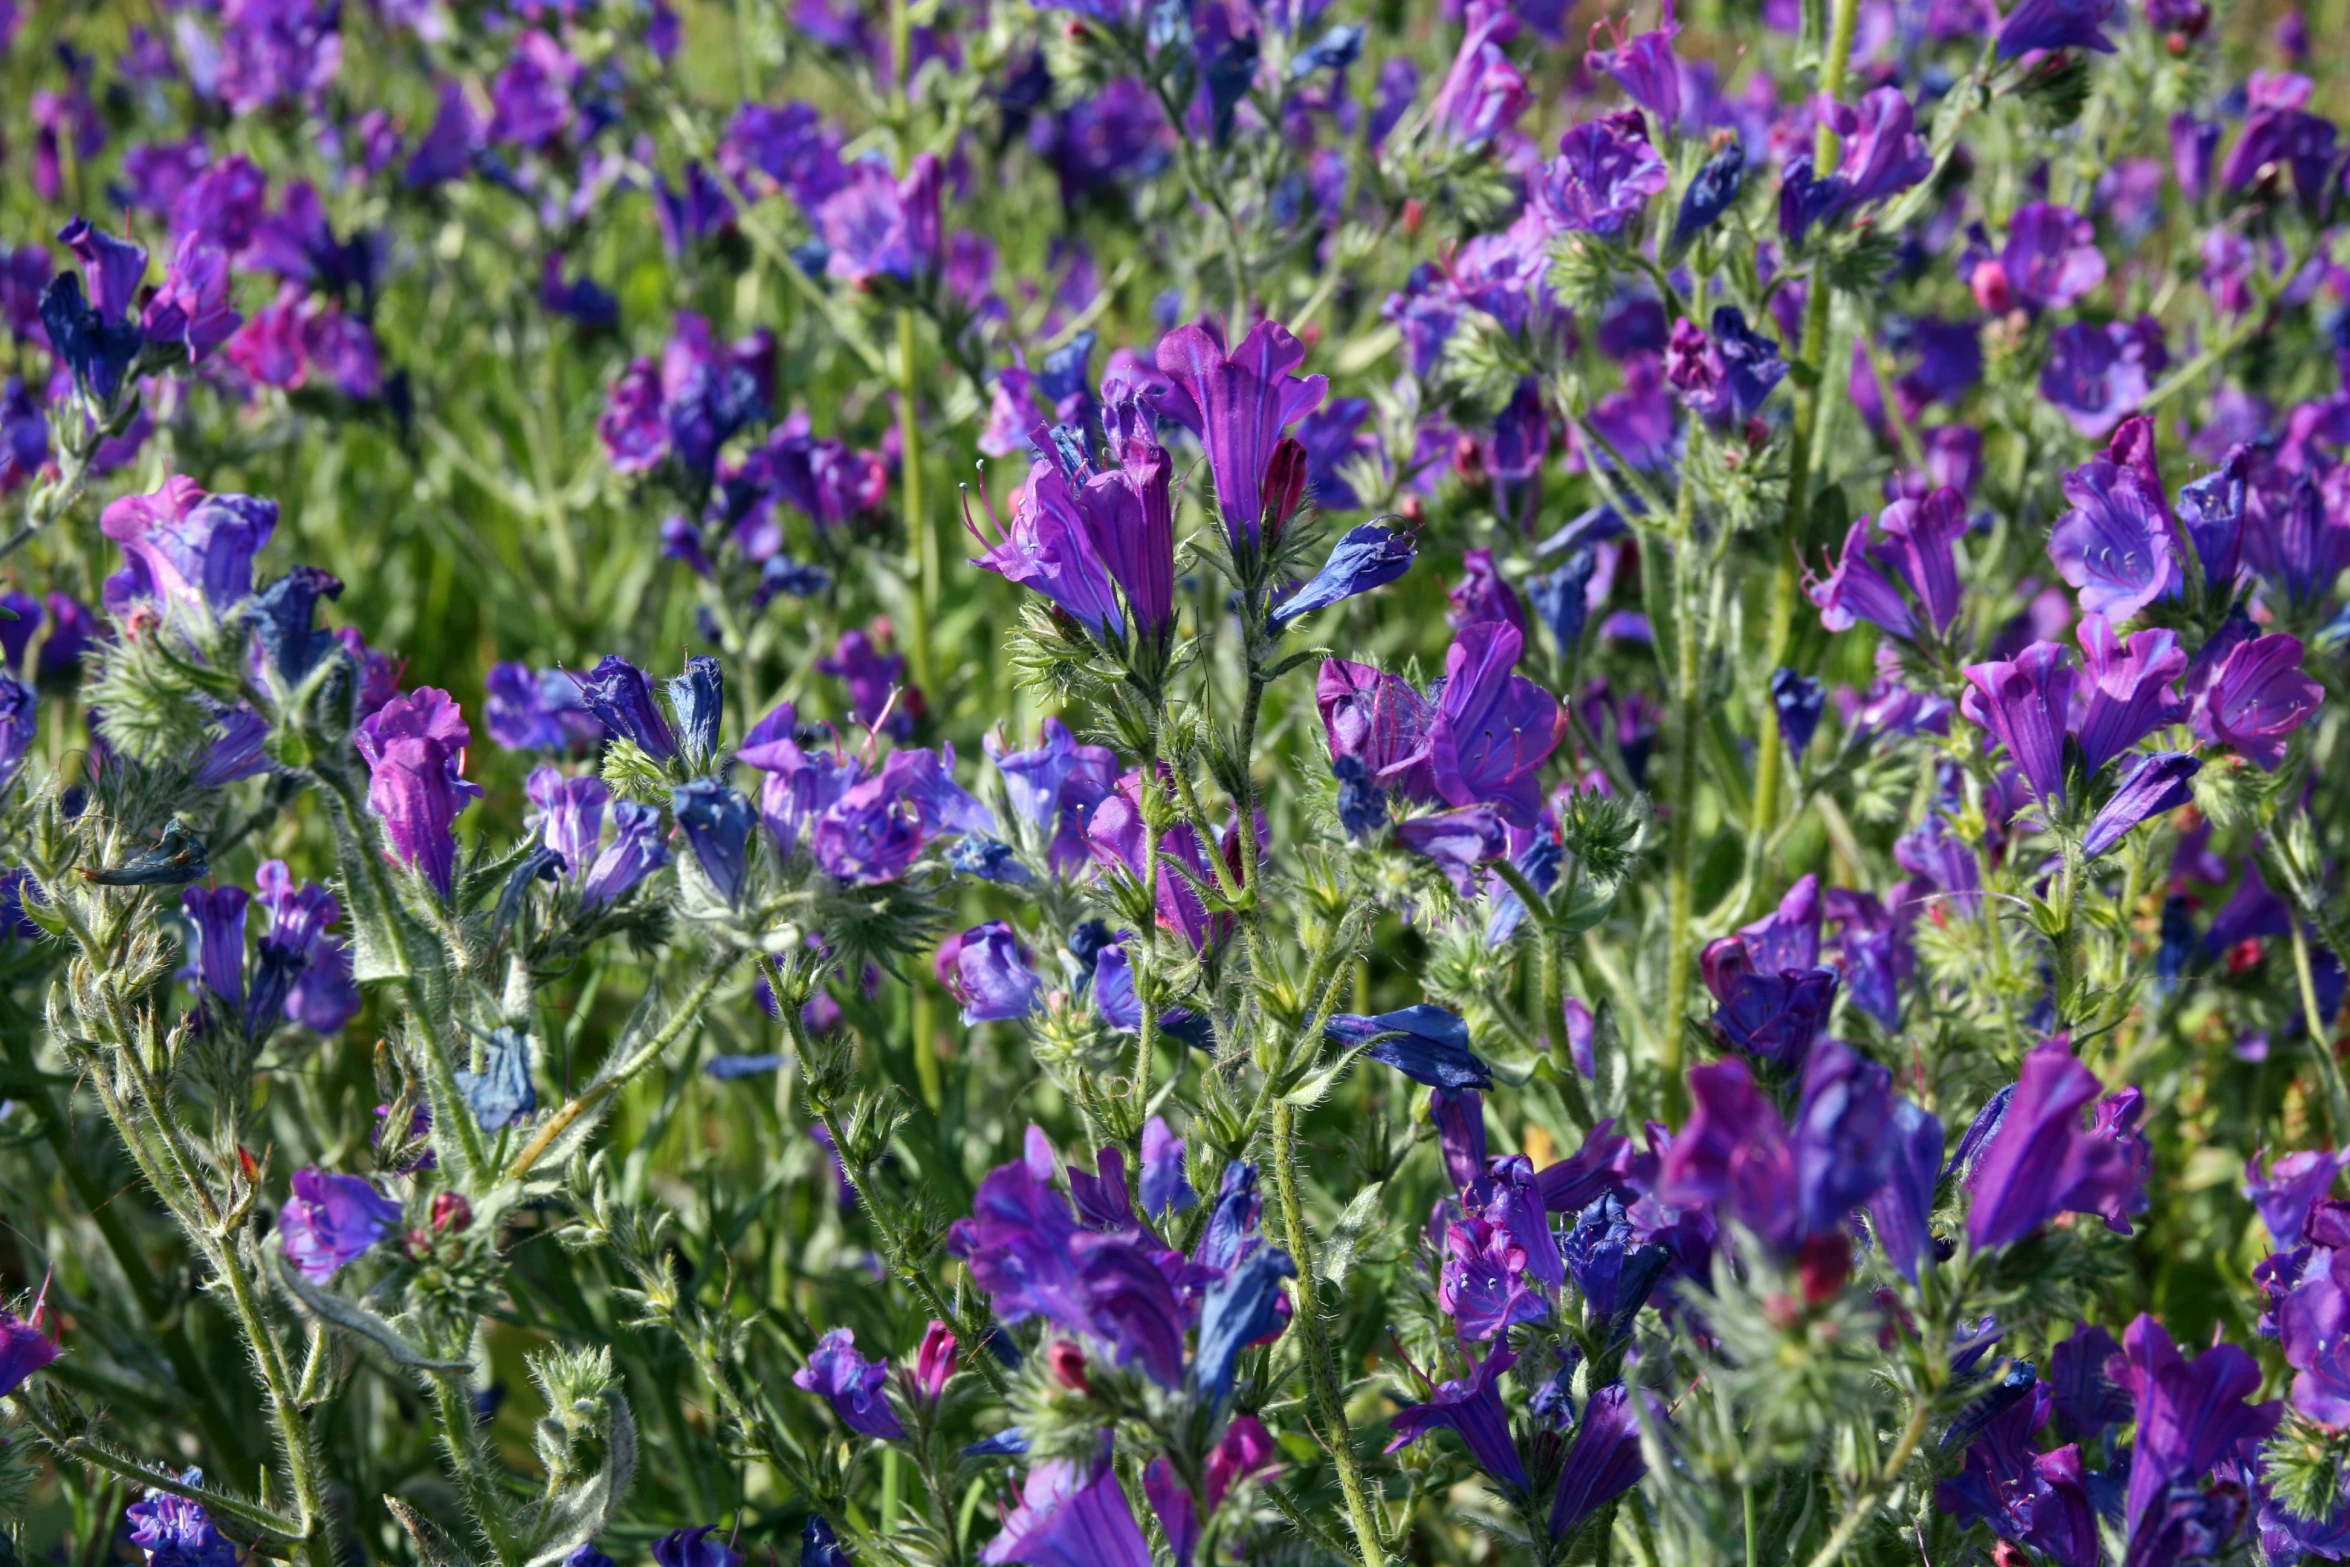 purple flower in a field full of green plants